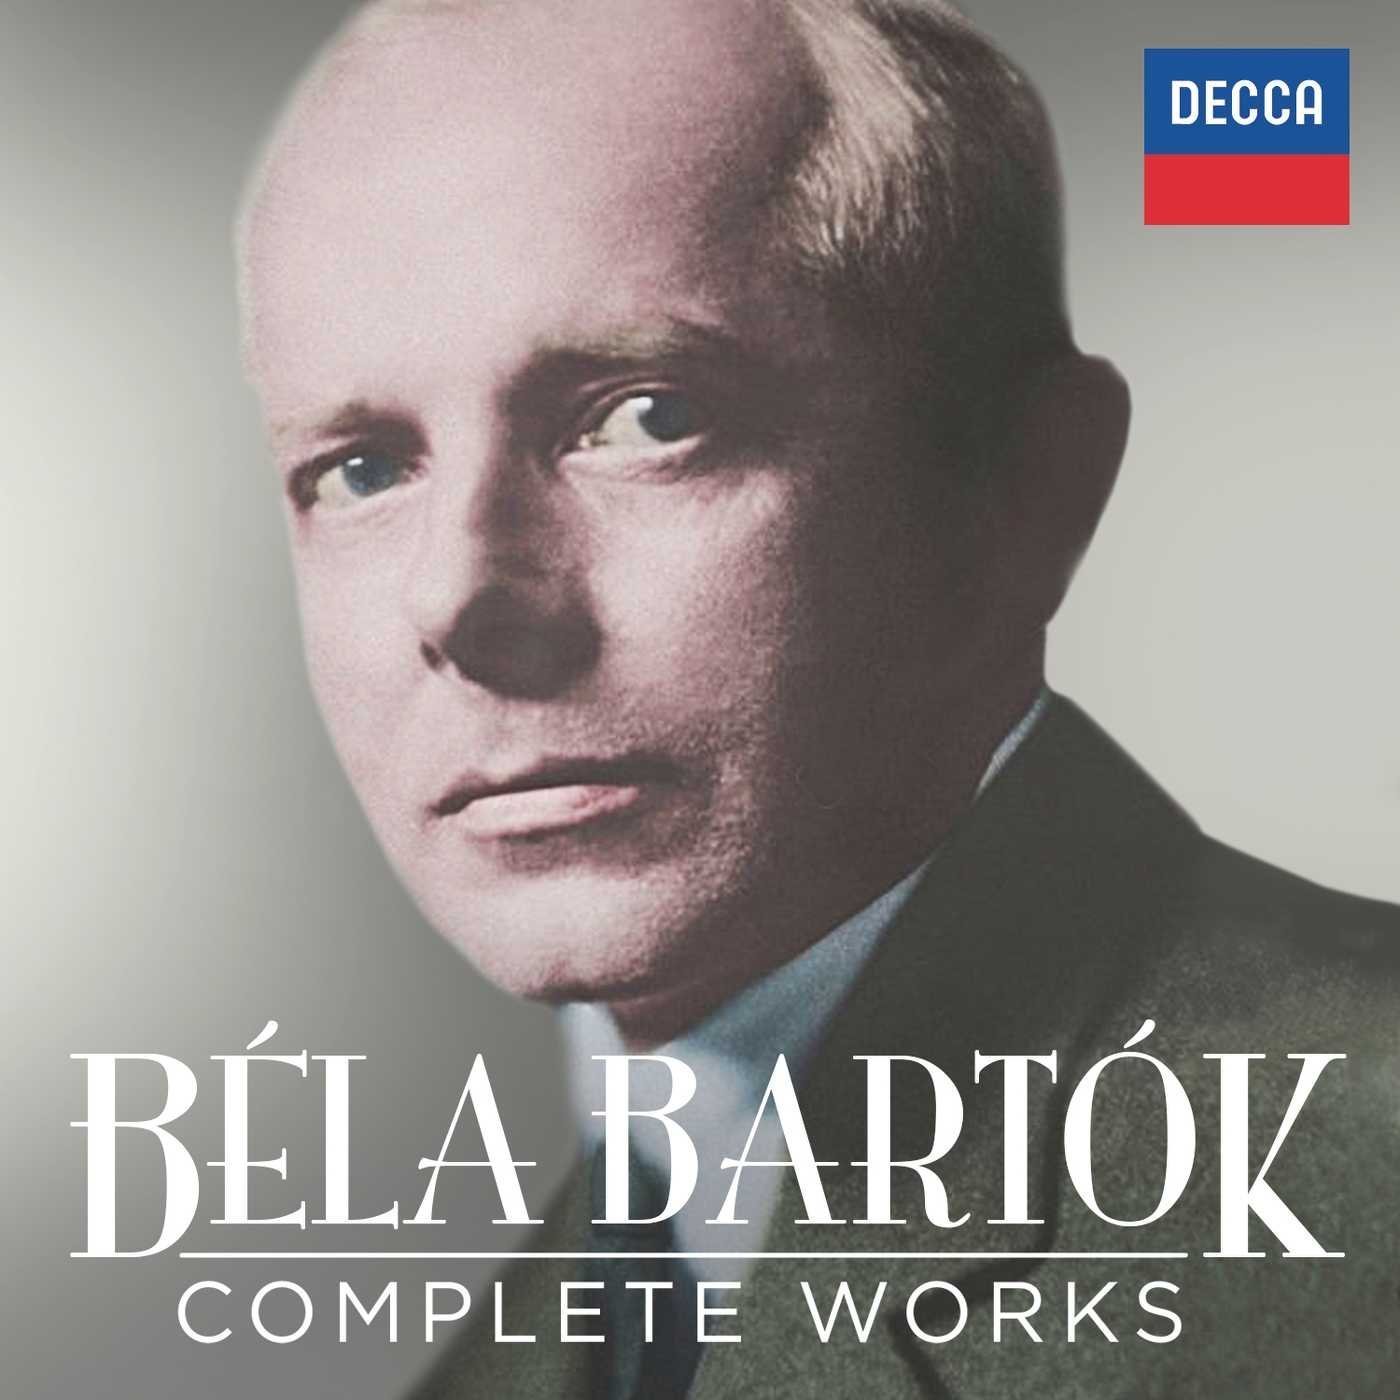 Béla Bartók: 5 stelle su Musica per il nuovo box Decca